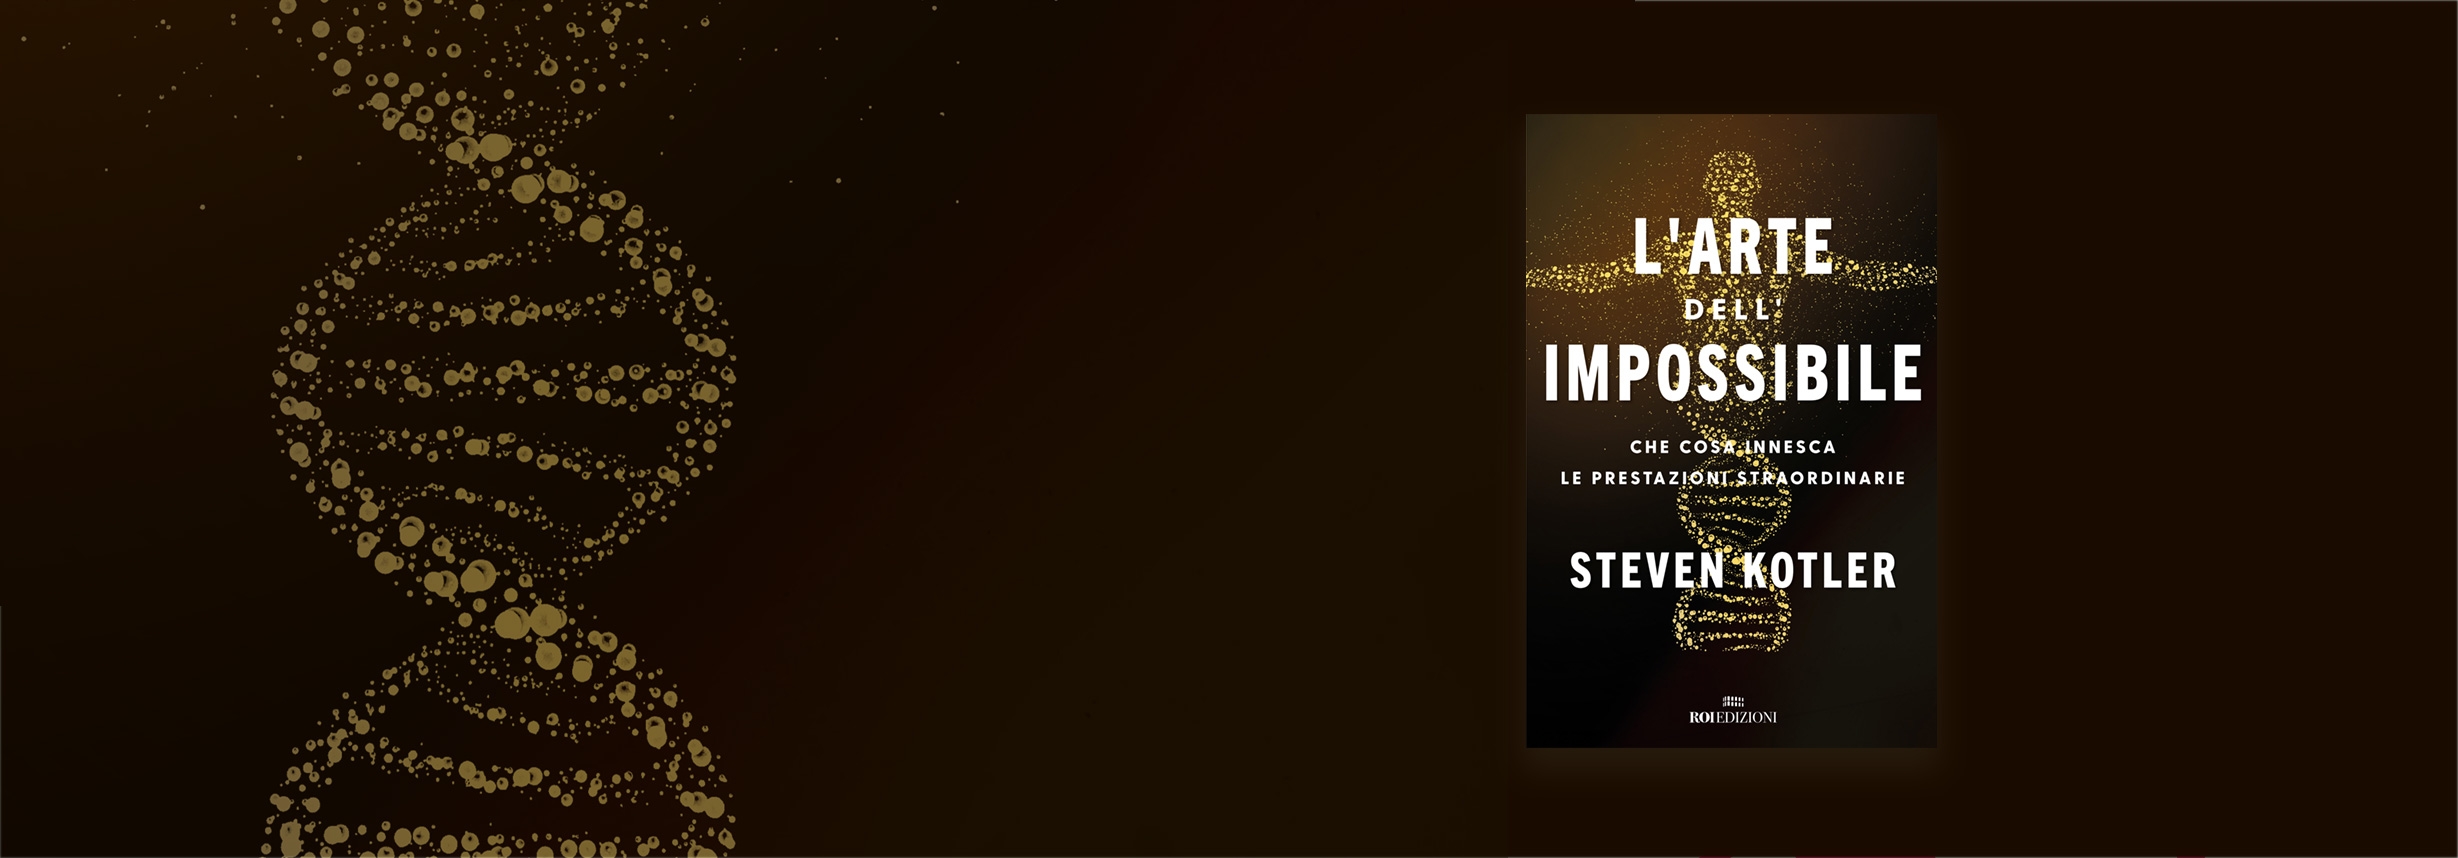 L'arte dell'impossibile, Steven Kotler